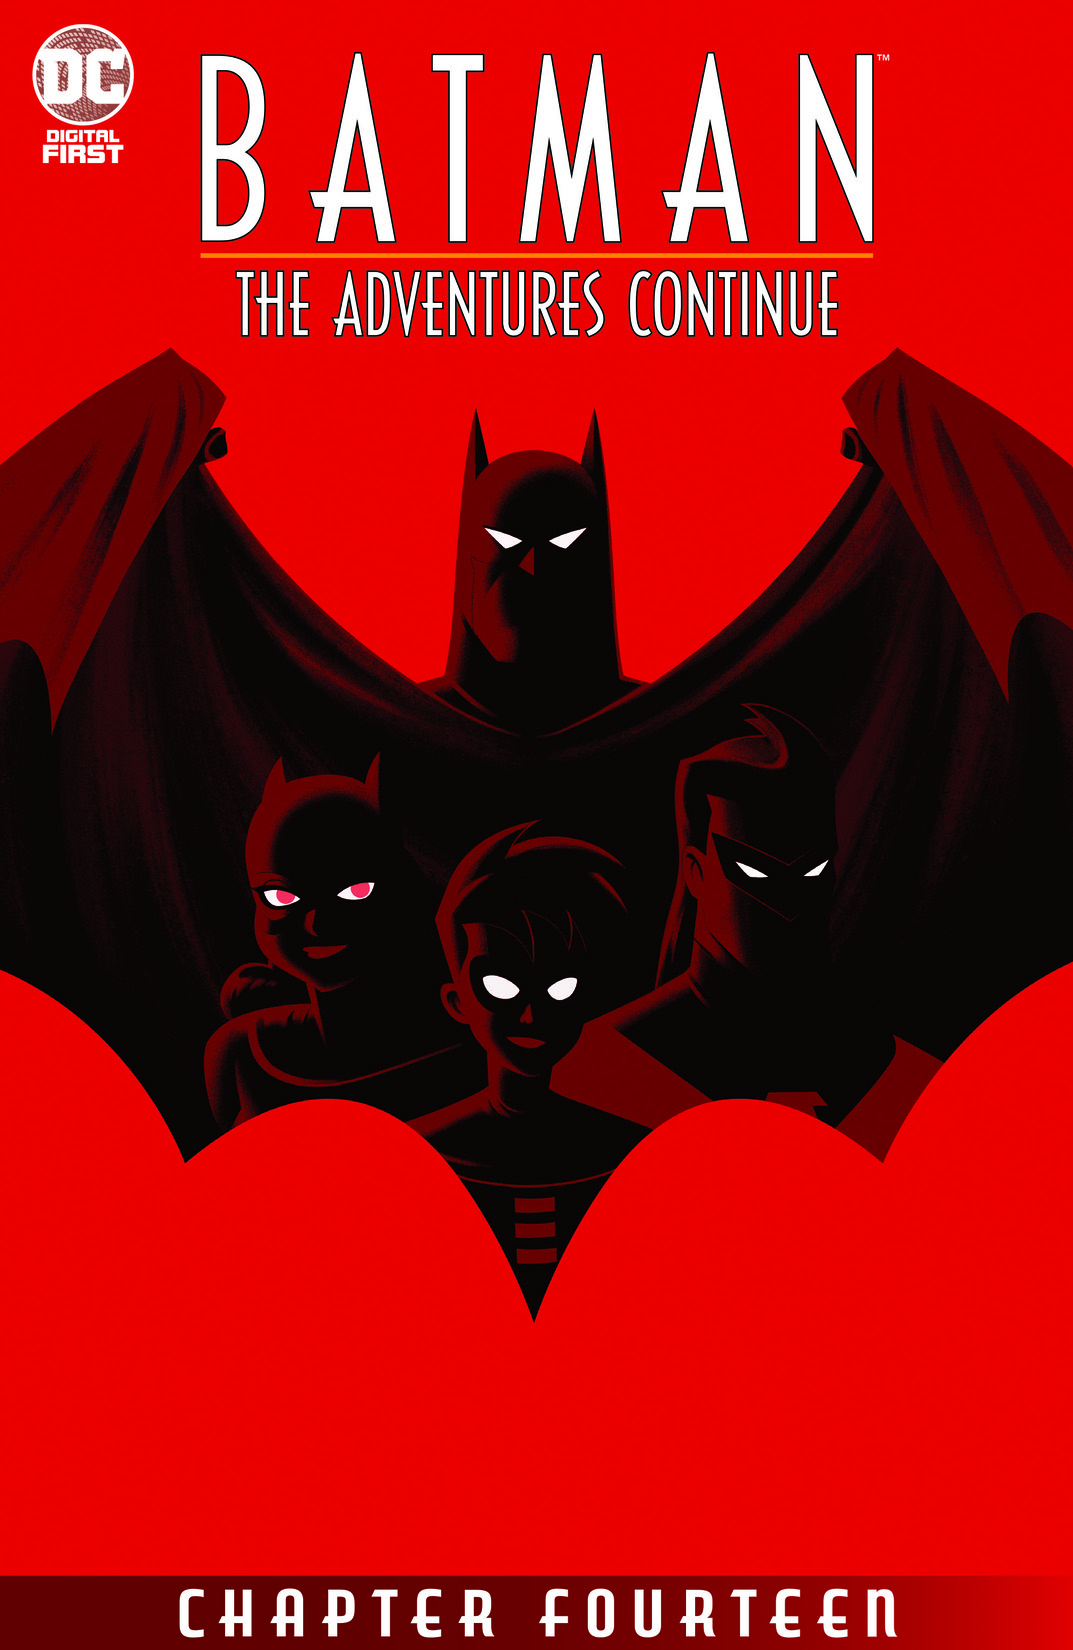 Batman: The Adventures Continue #14 preview images